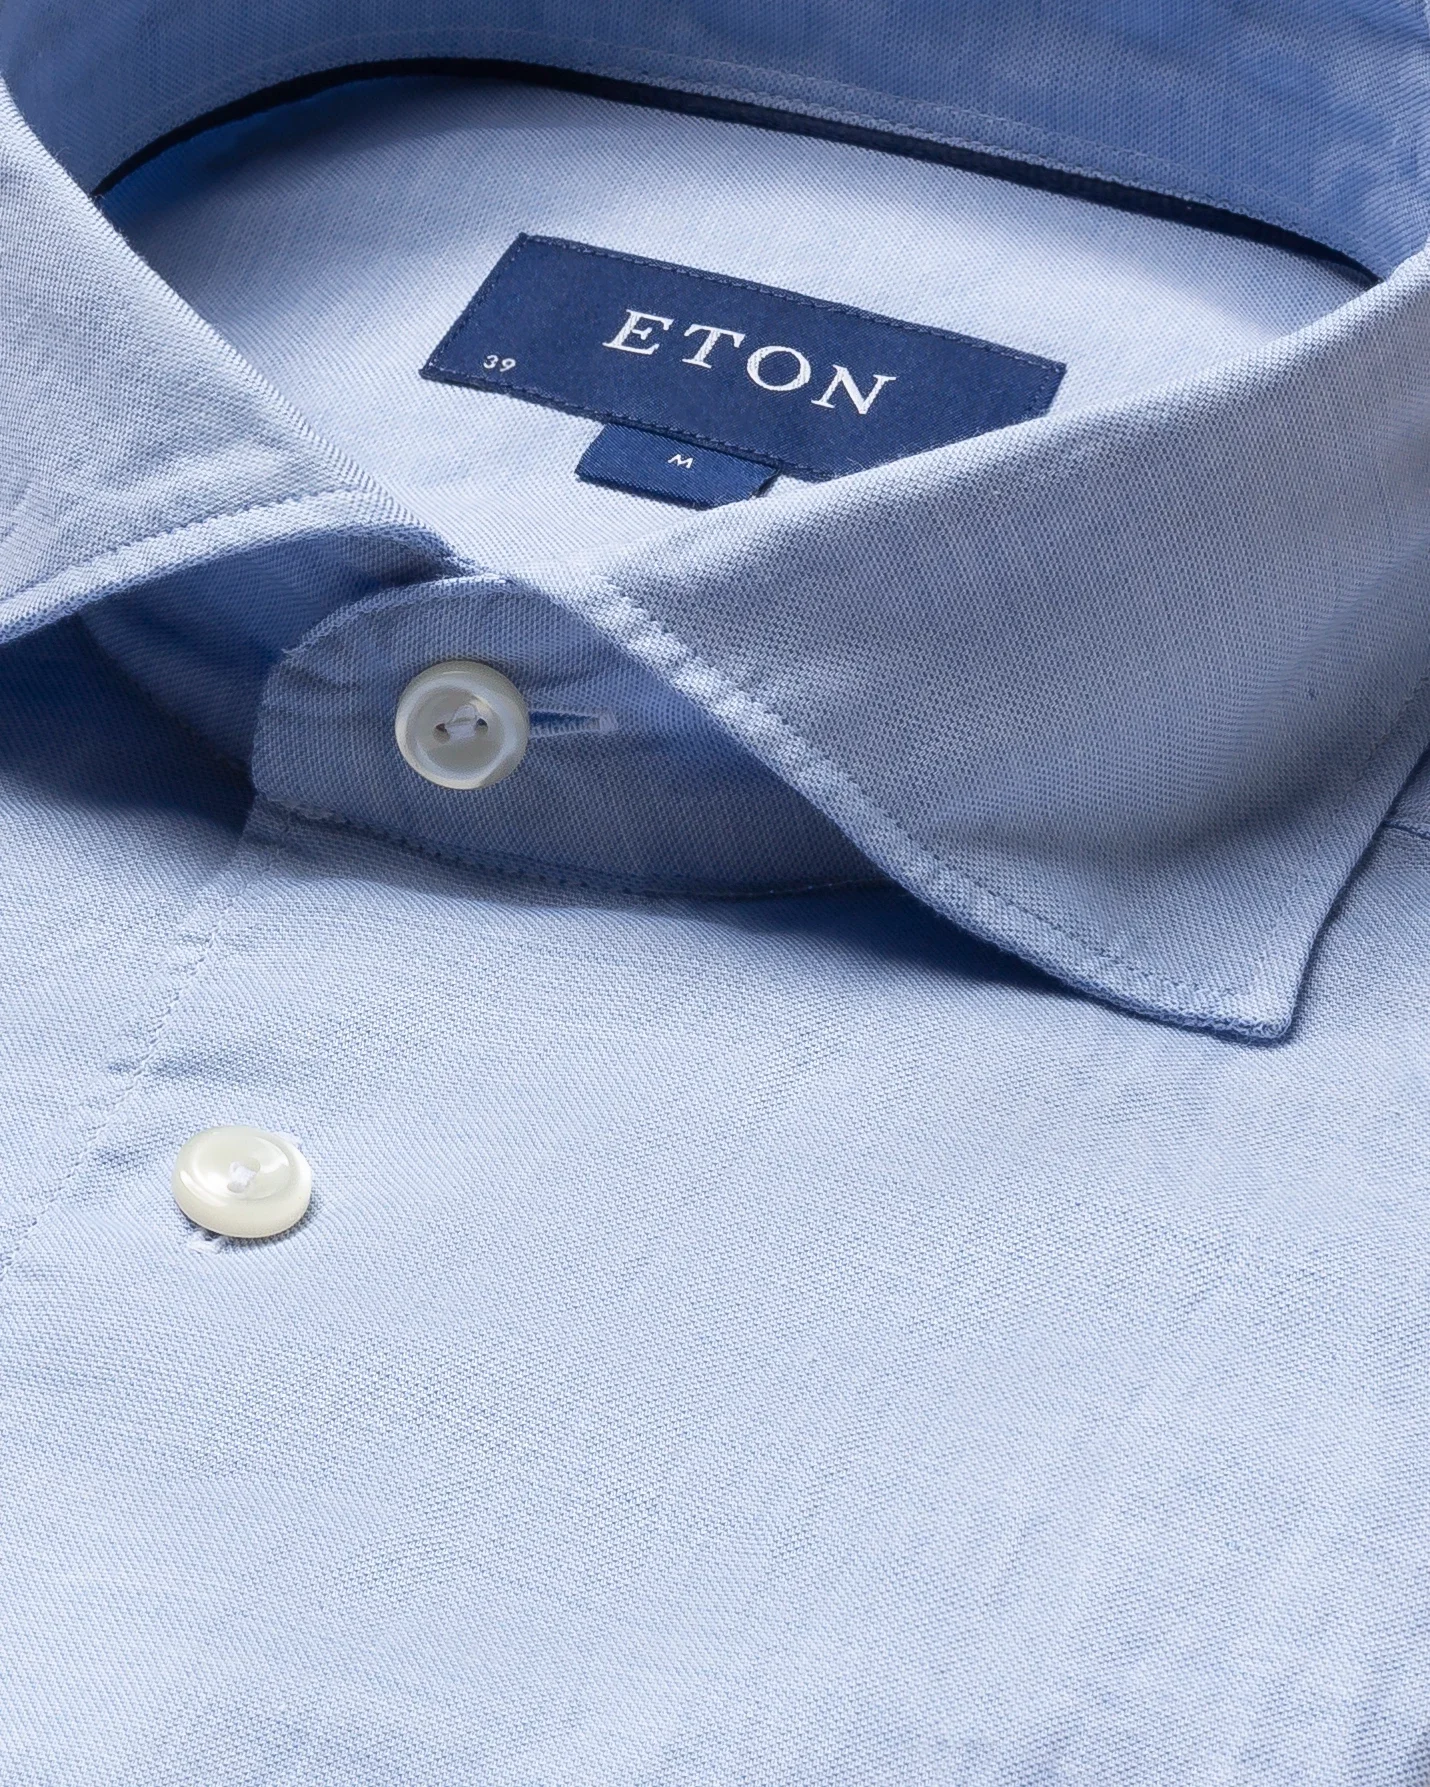 Eton - light blue cotton silk shirt soft